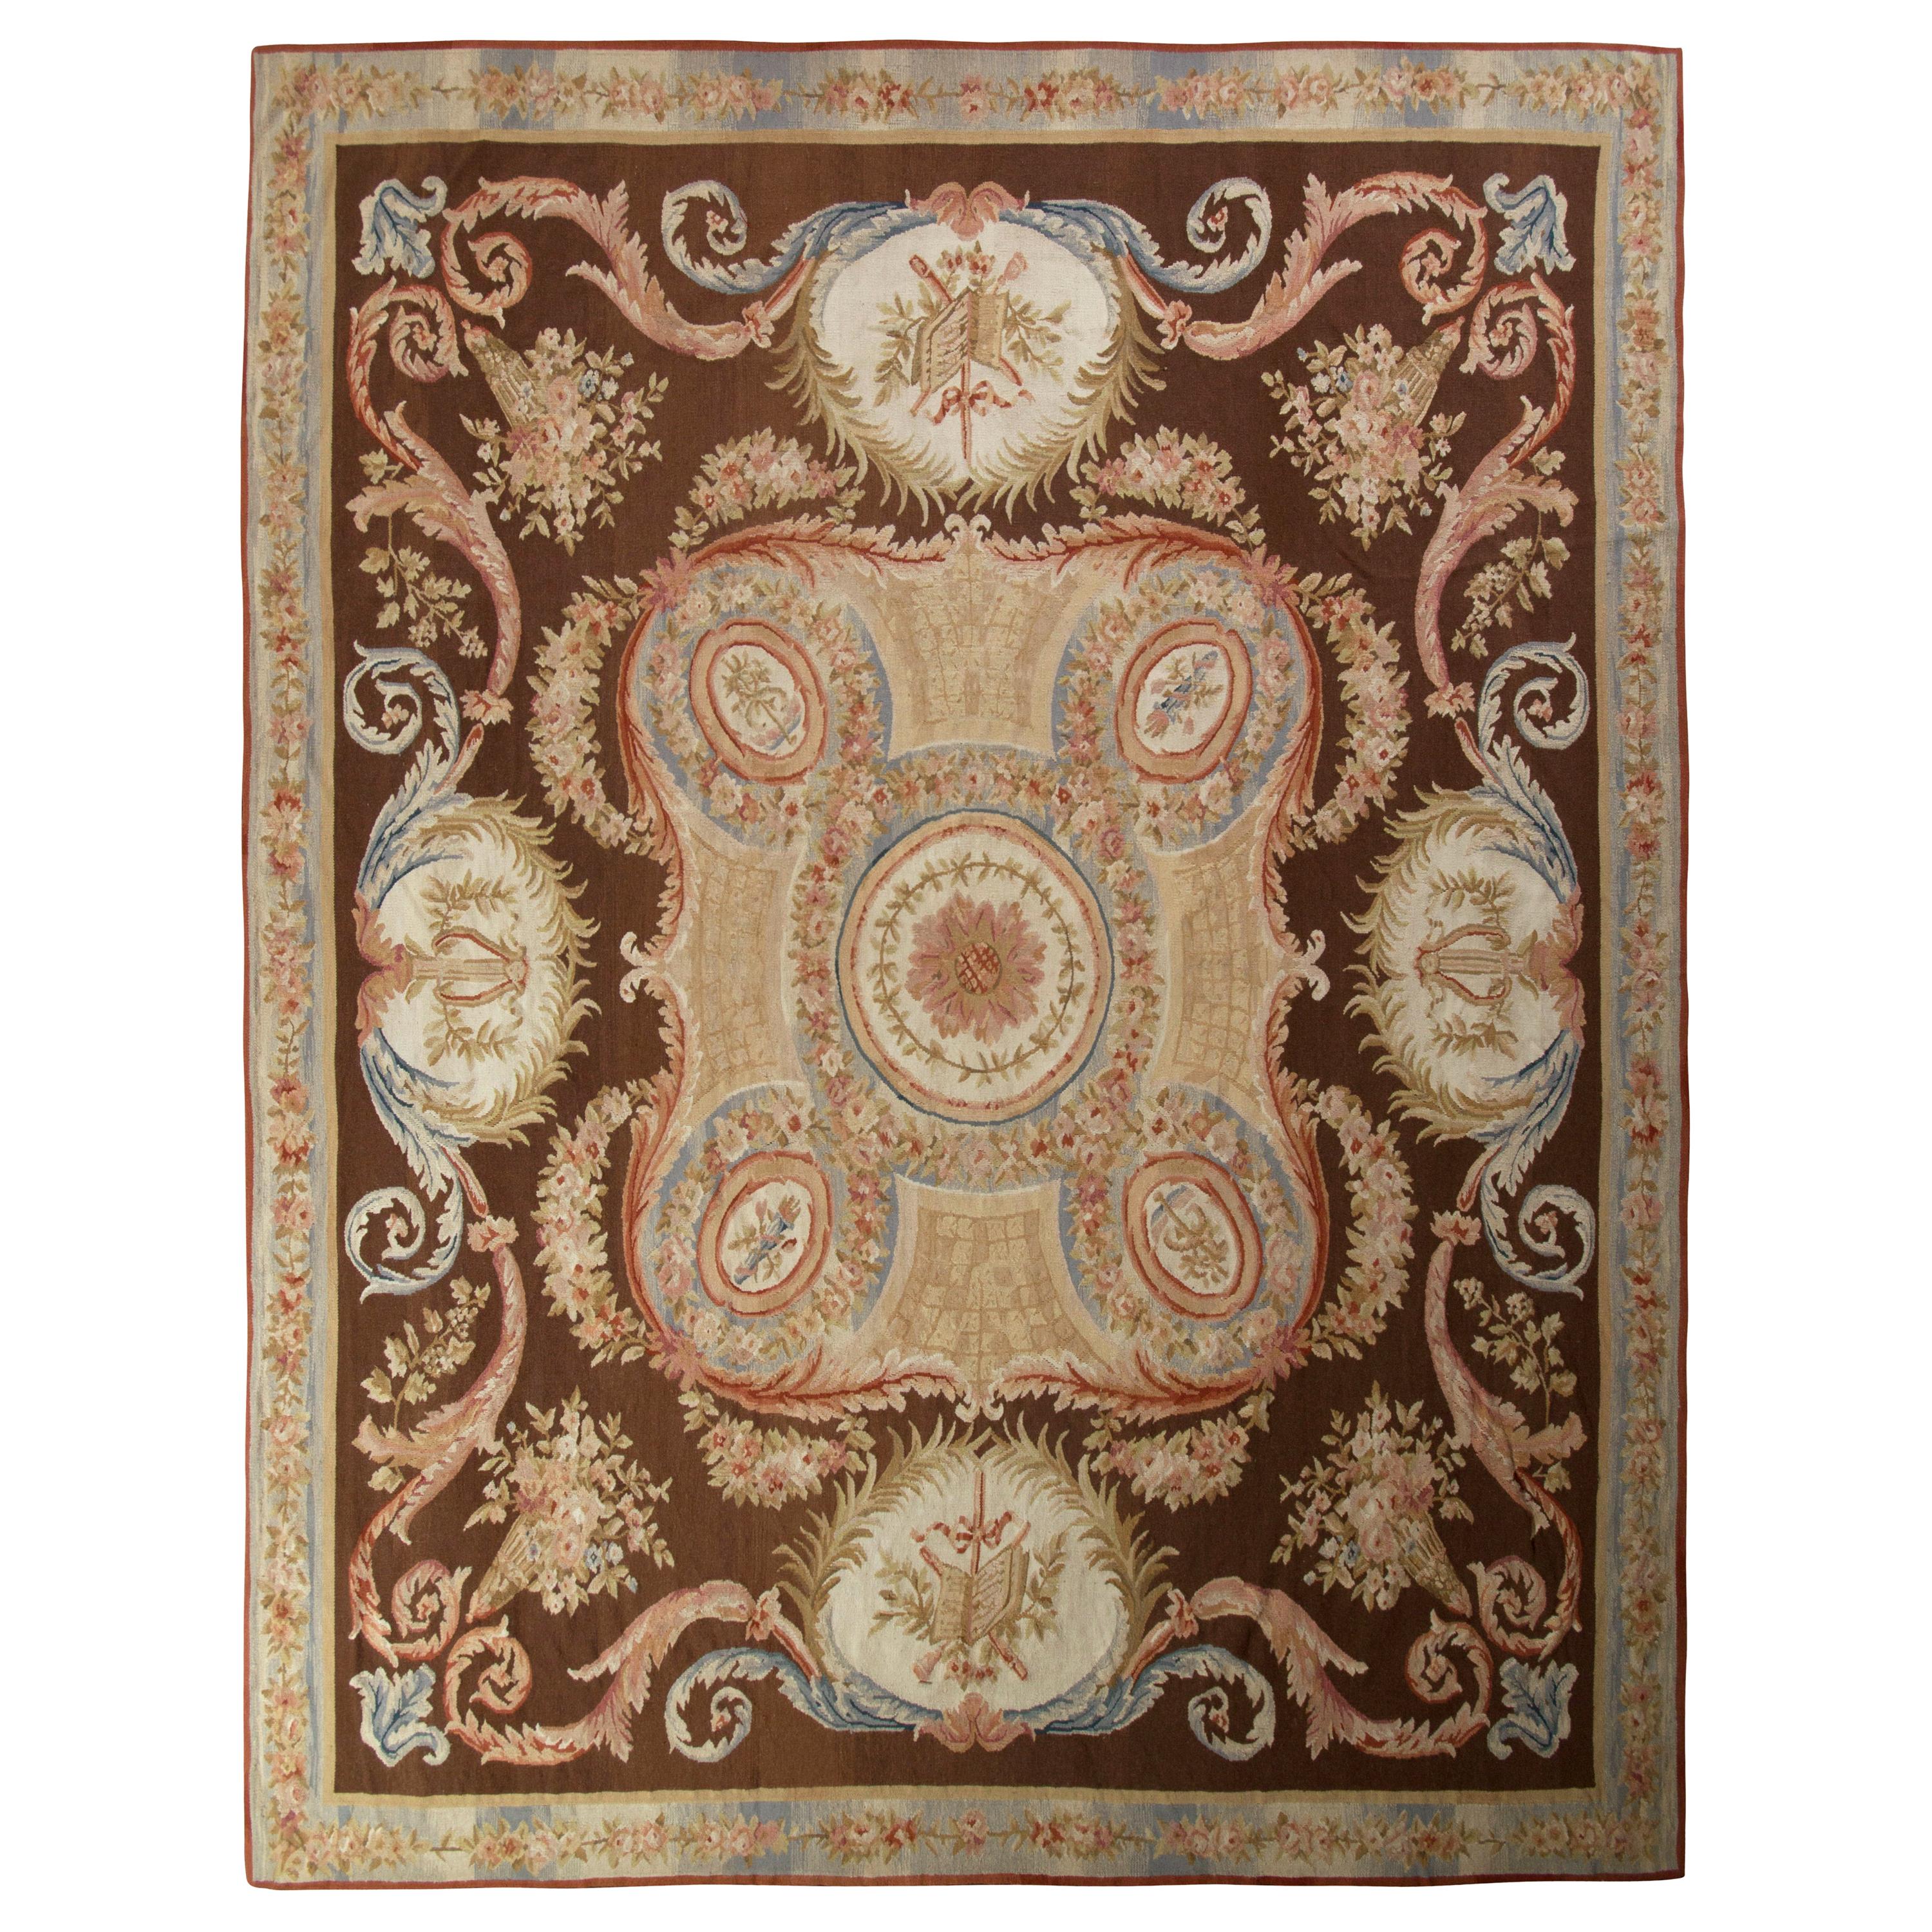 Teppich & Kelim-Teppich im Aubusson-Stil, 18. Jahrhundert, Kelim-Teppich in Beige und Braun mit Medaillonmuster